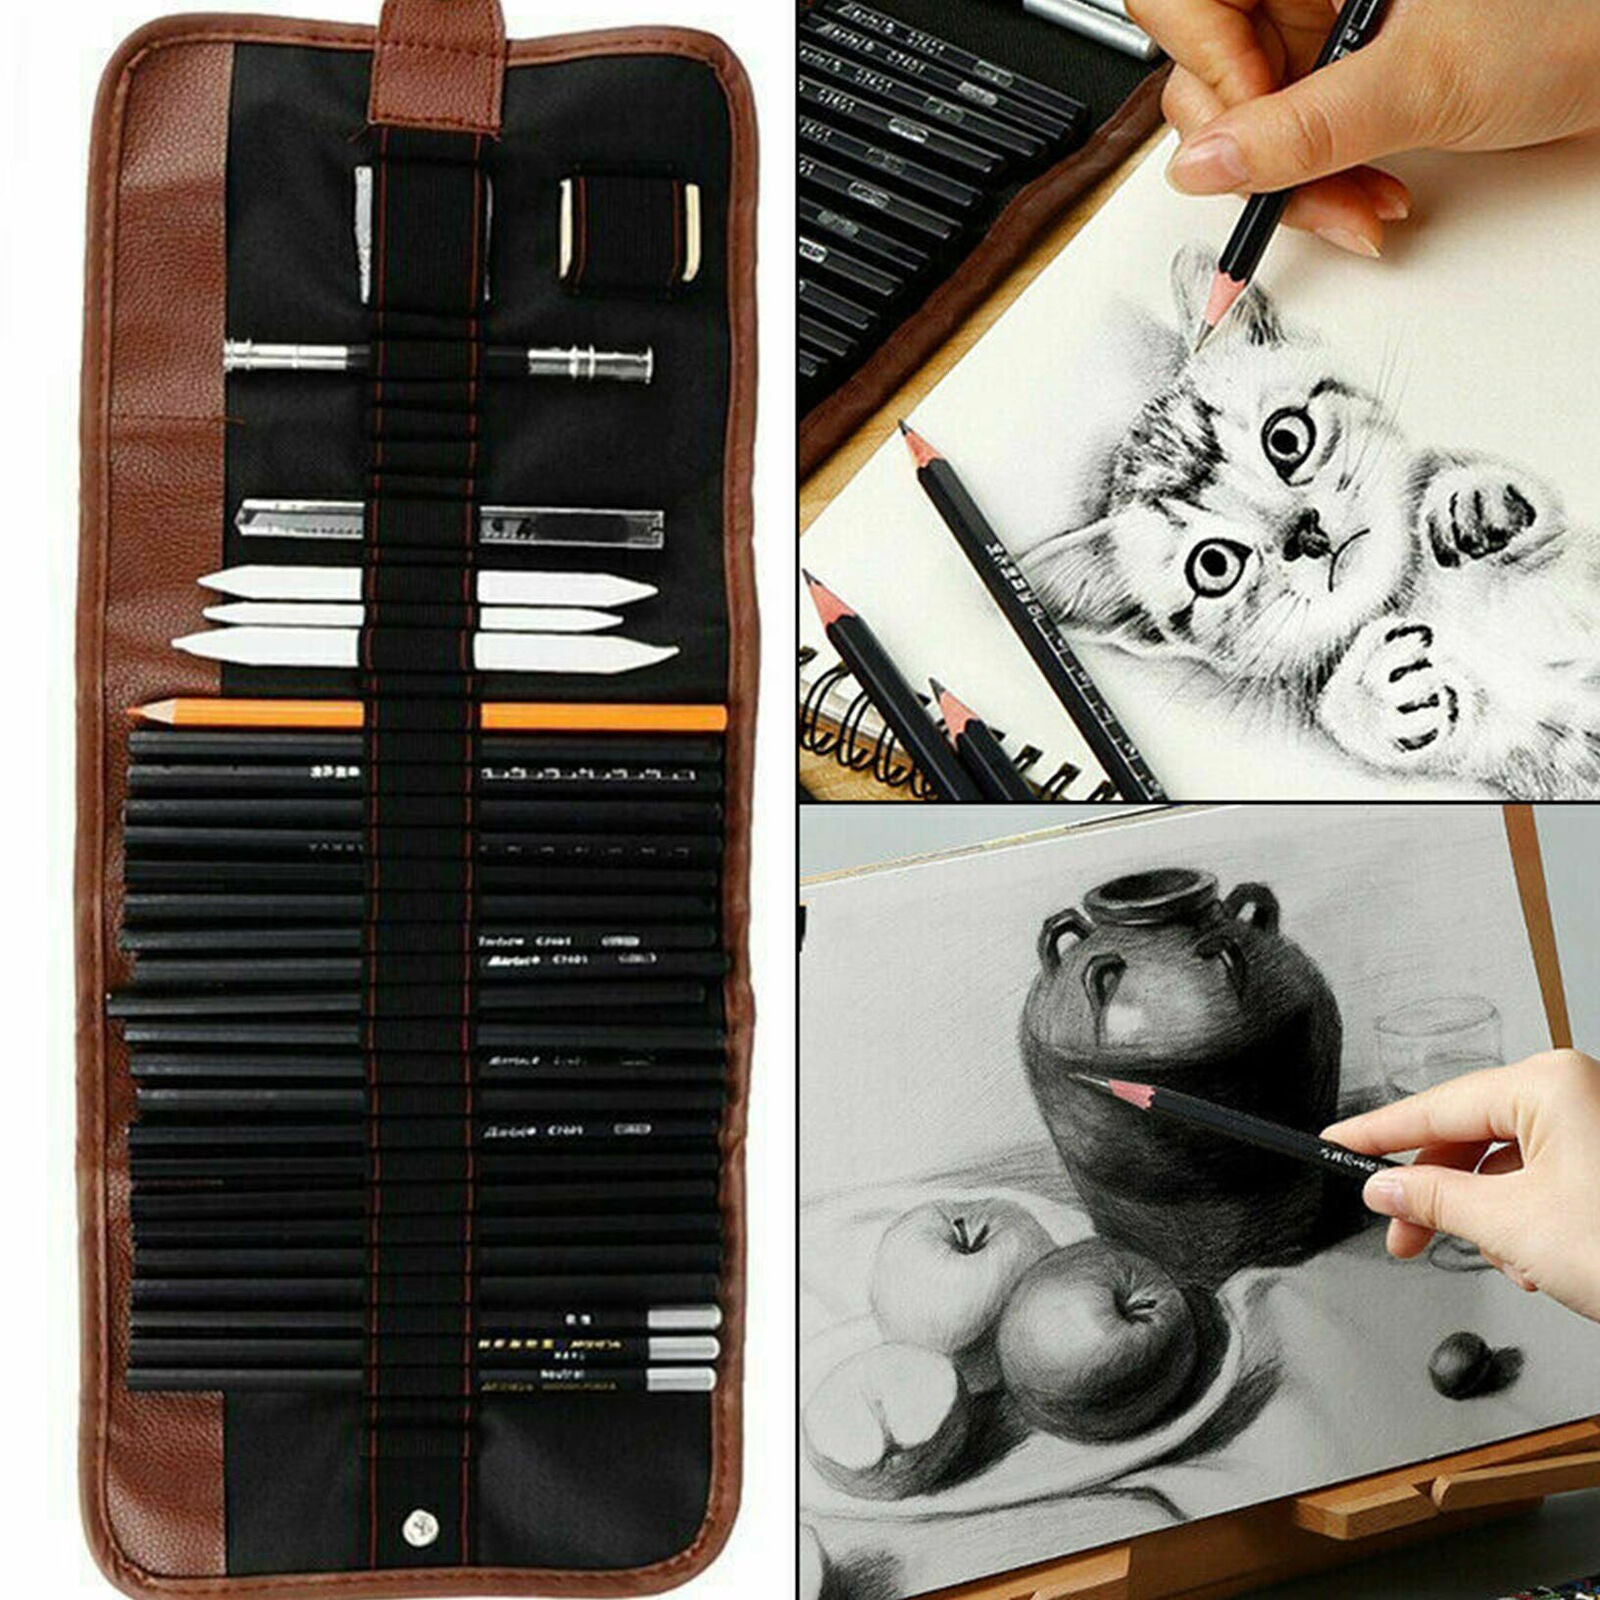 Sketching Set Kit Drawing Art Pencils Art Supplies Artist Sketching Professional